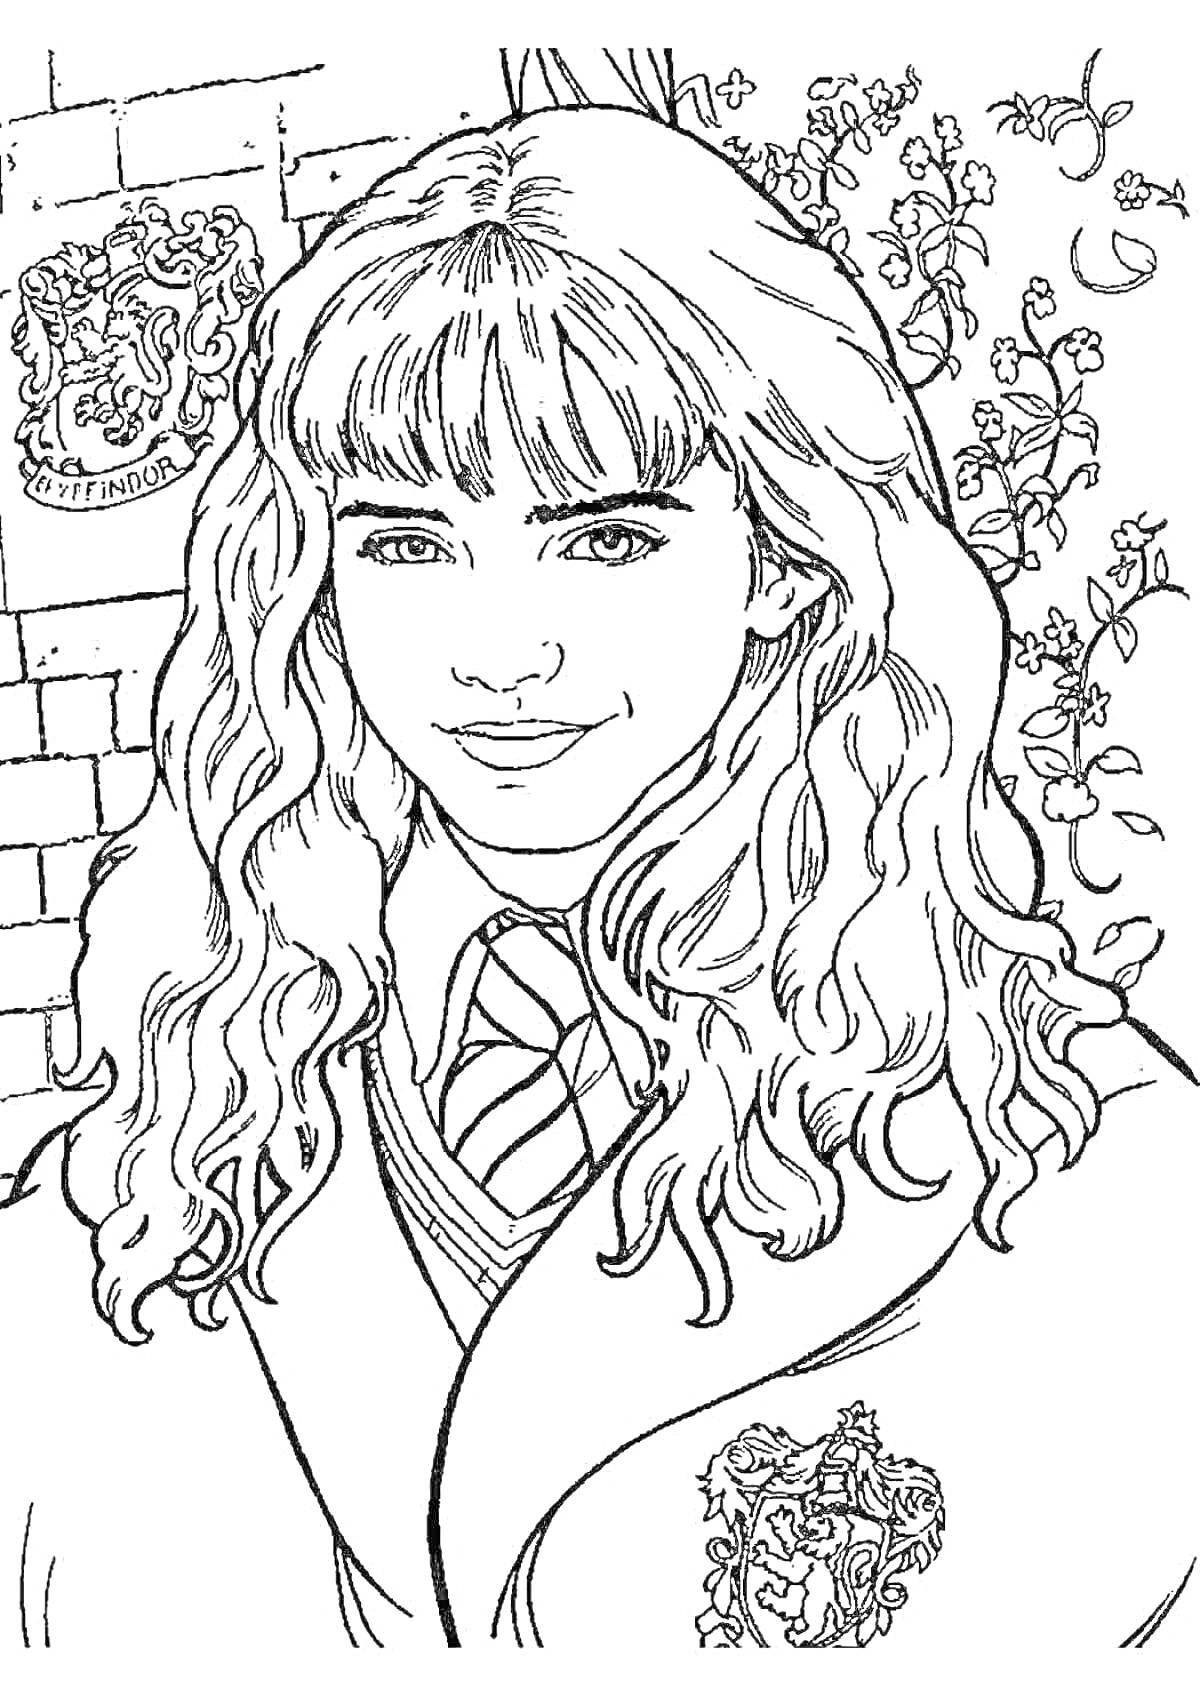 Портрет девушки-волшебницы в школьной форме с эмблемой Гриффиндора на фоне стен и растений